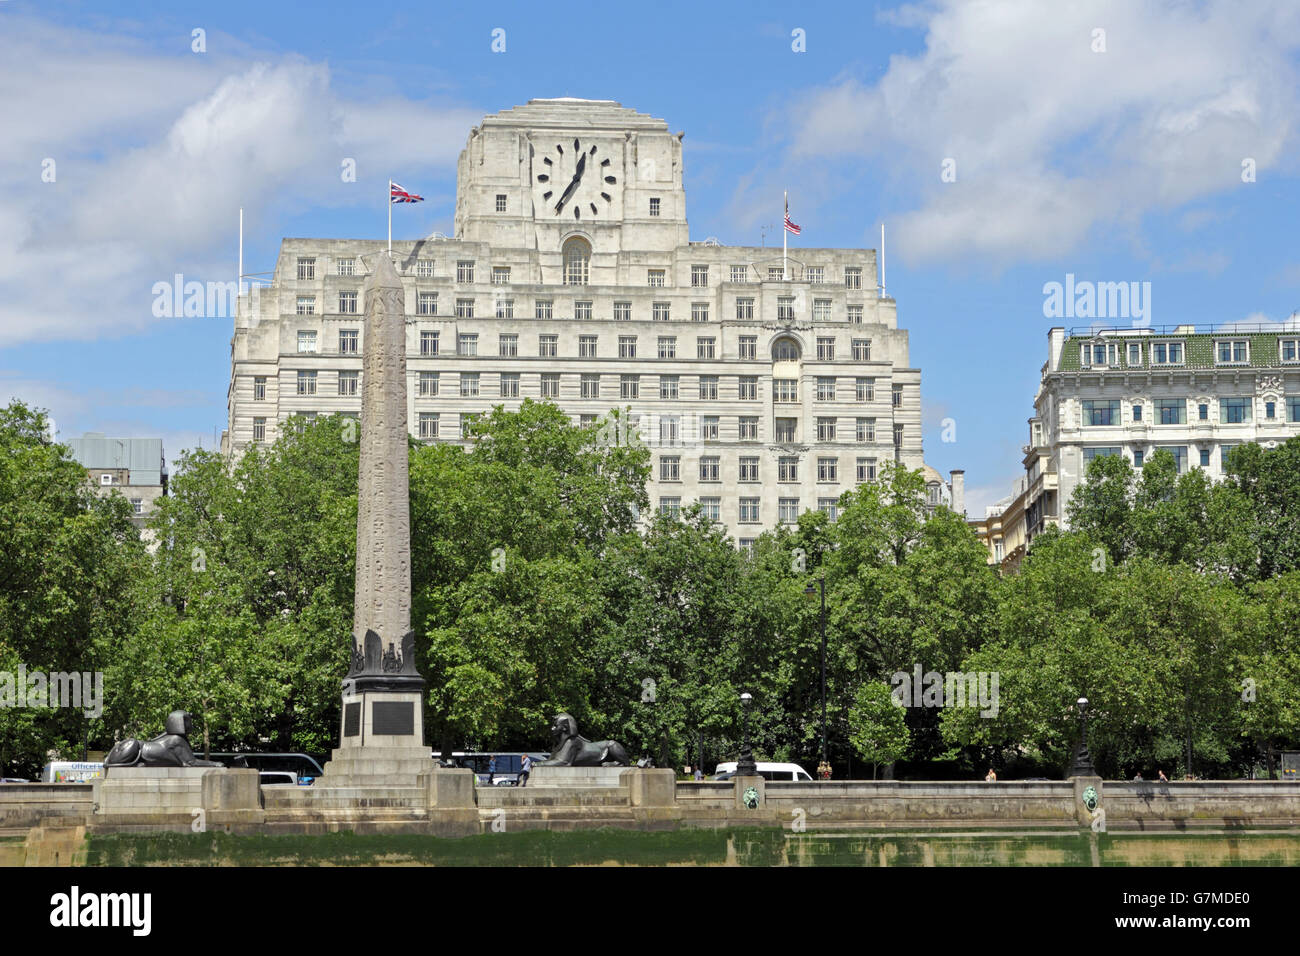 Shell Mex House et Cleopatra's Needle sur l'Embankment London England UK Banque D'Images